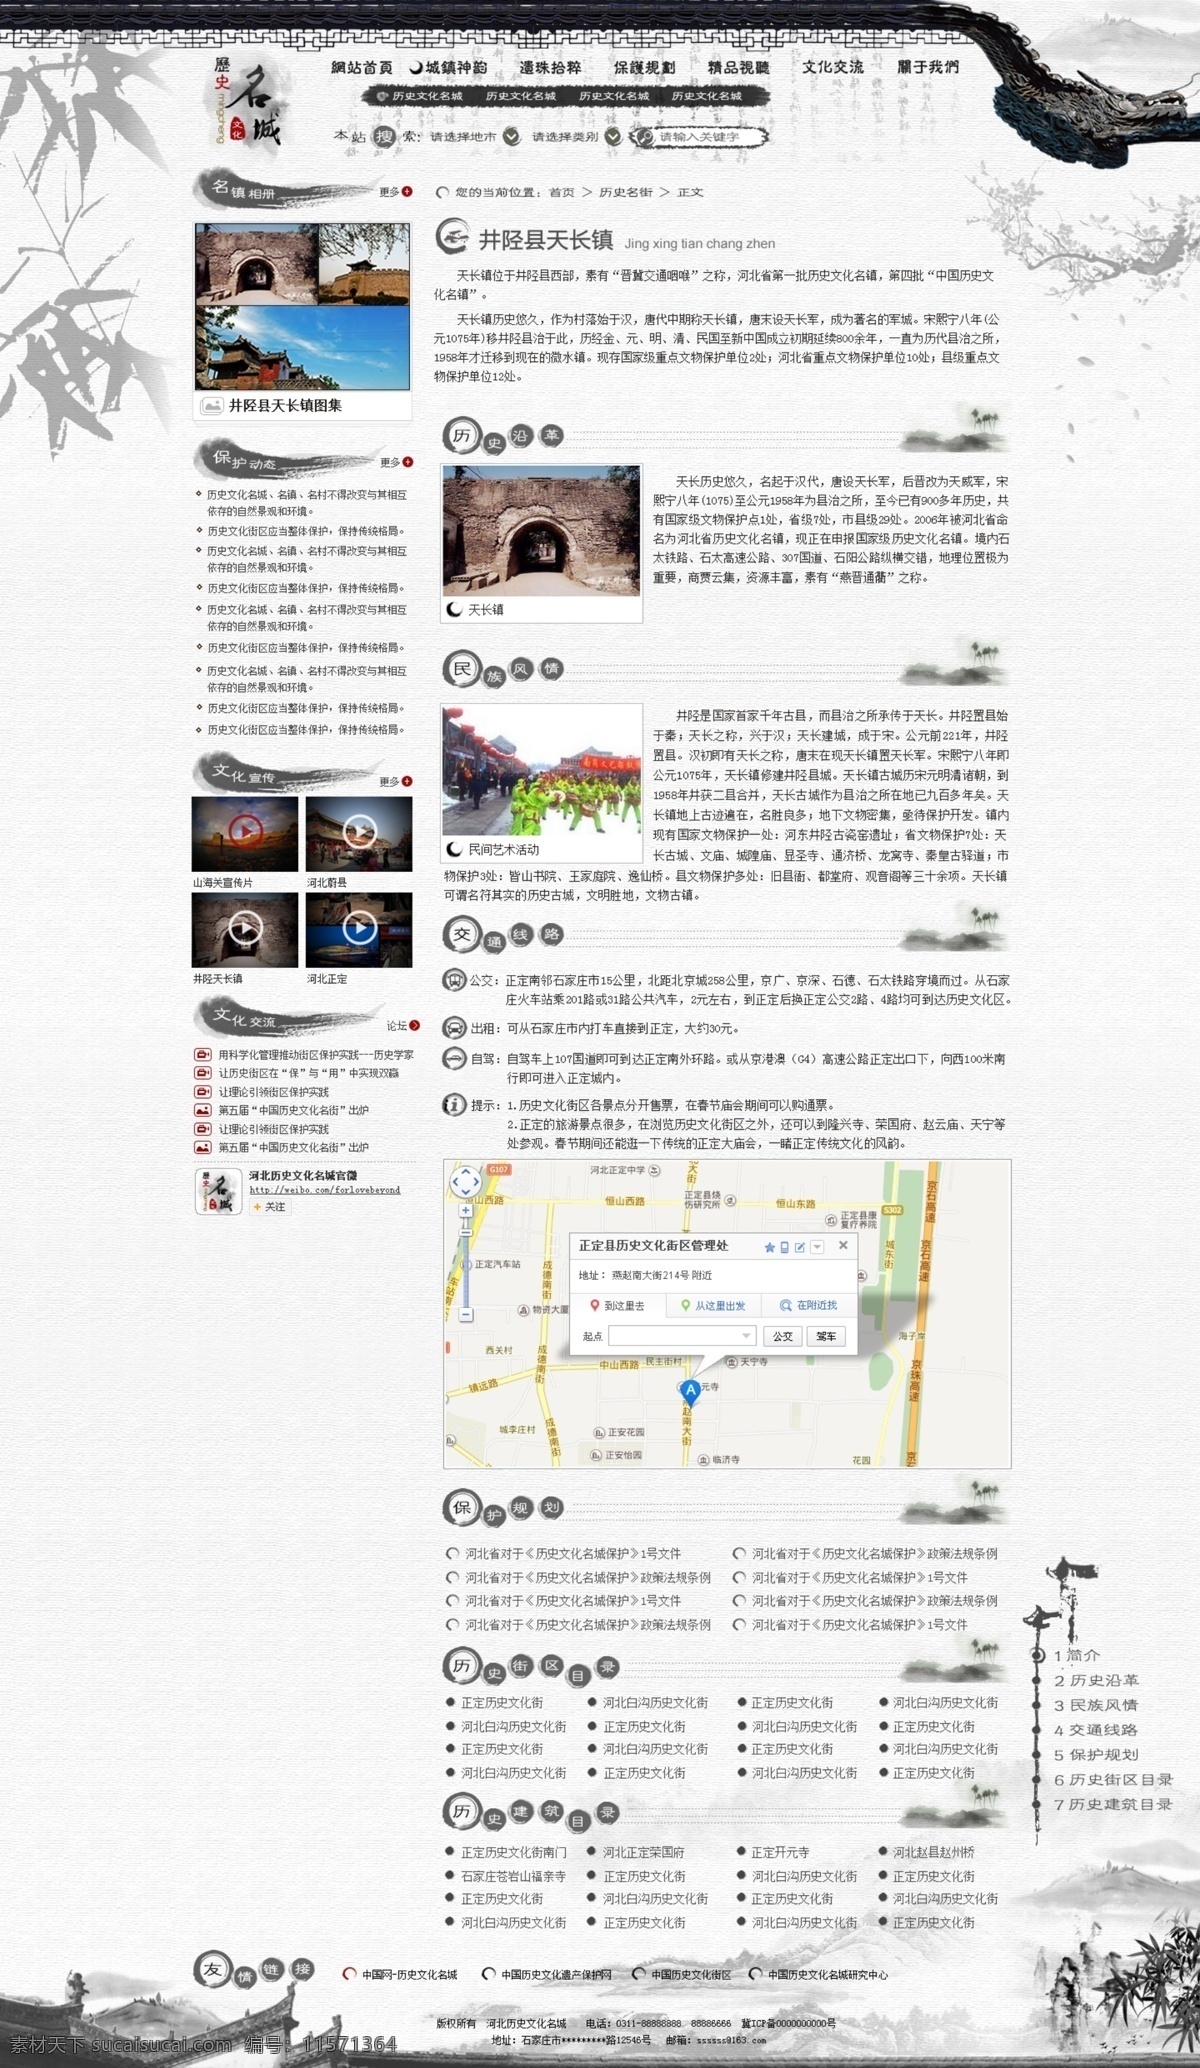 历史名城 旅游景点 网页 传承 历史 网页设计 文化 中国风 中文模板 web 界面设计 网页素材 其他网页素材